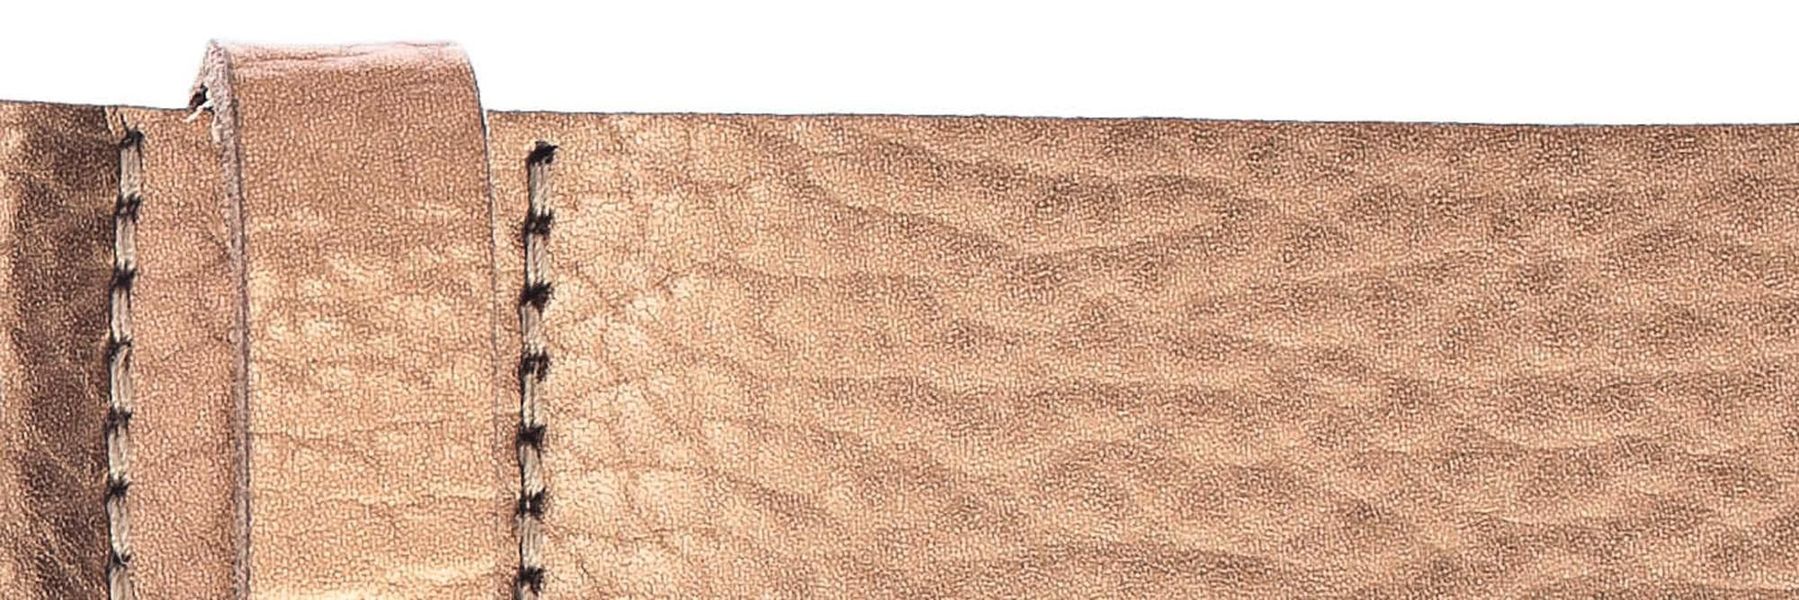 Vanzetti Leather belt - brown (0180)